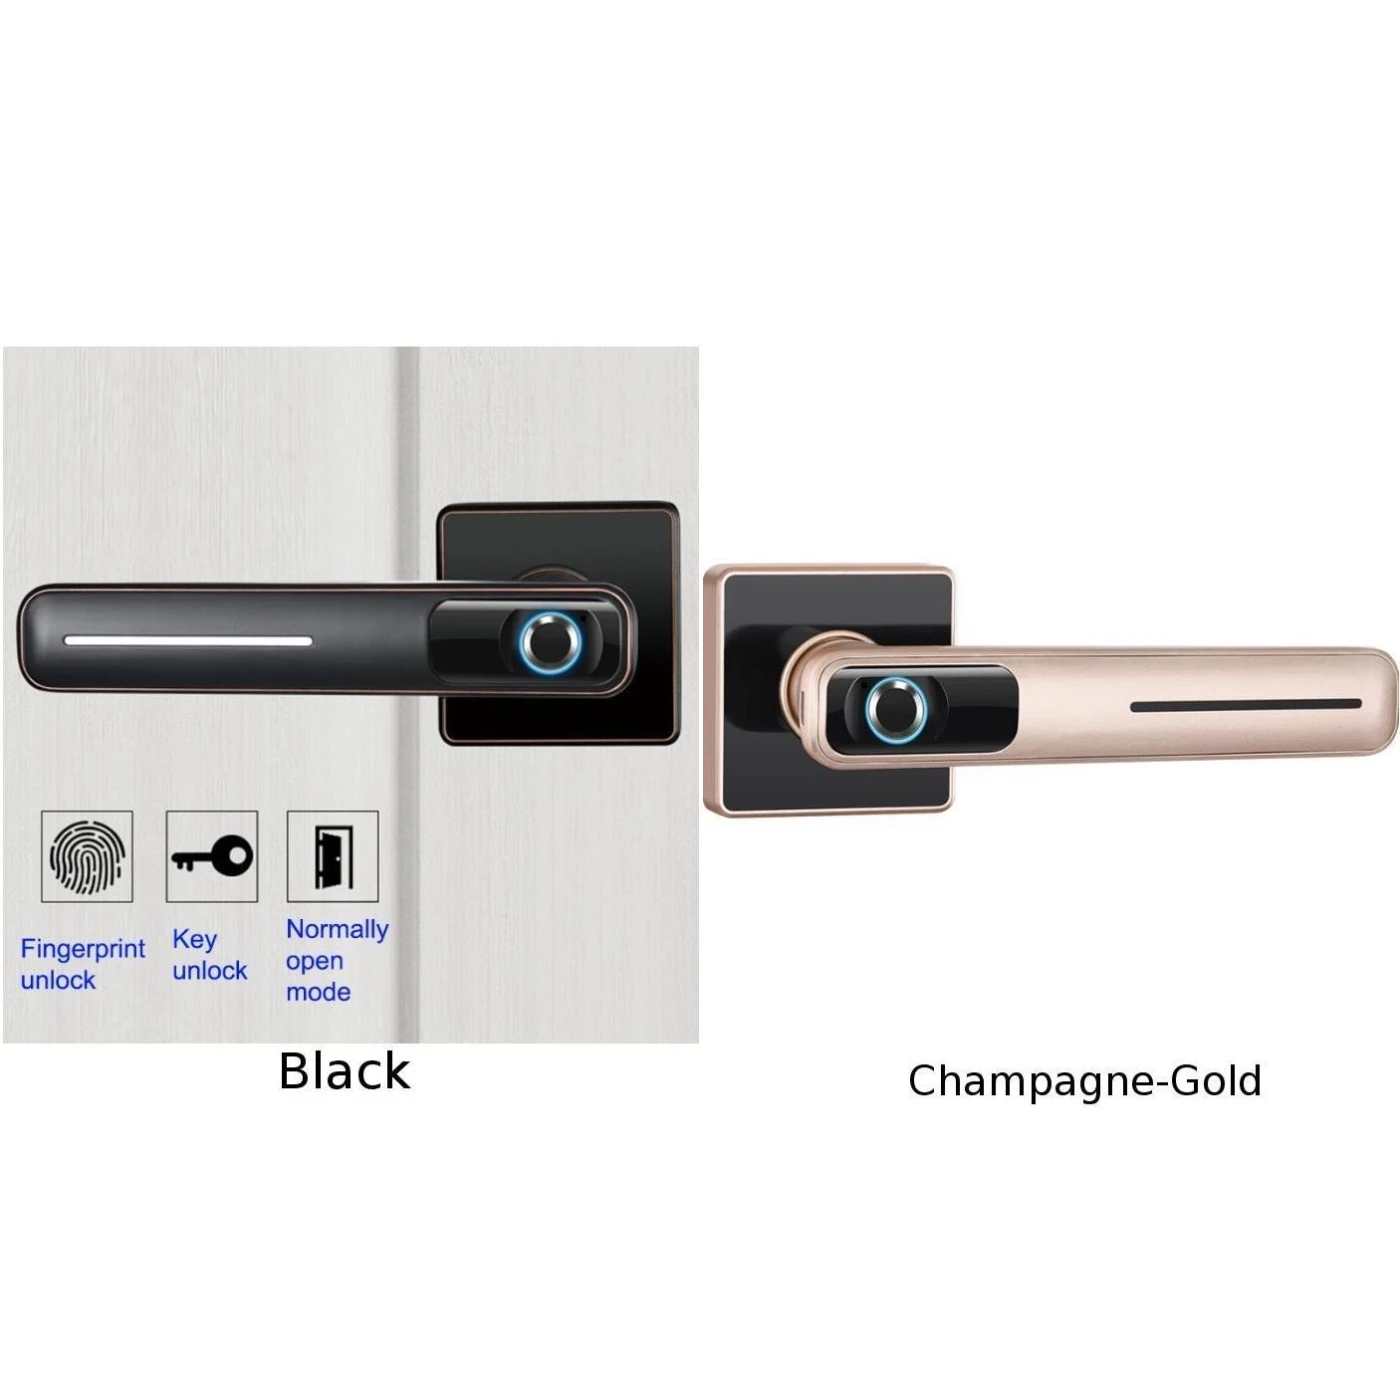 Умный домашний интерьер спальни деревянный дверной замок с идентификацией через отпечатки пальцев USB и зарядка батареи